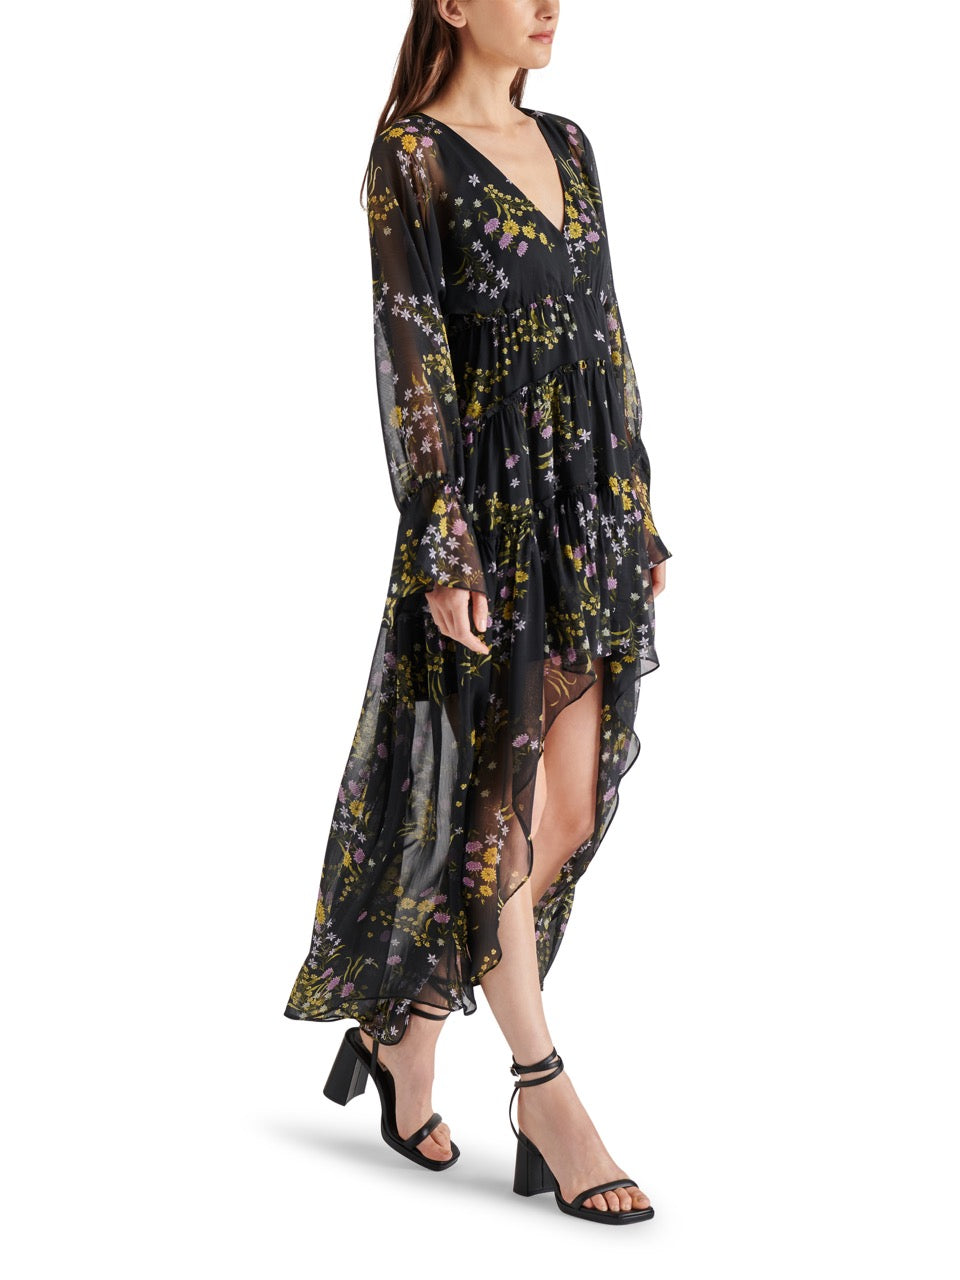 Steve Madden Sol Floral Dress in black -sideview